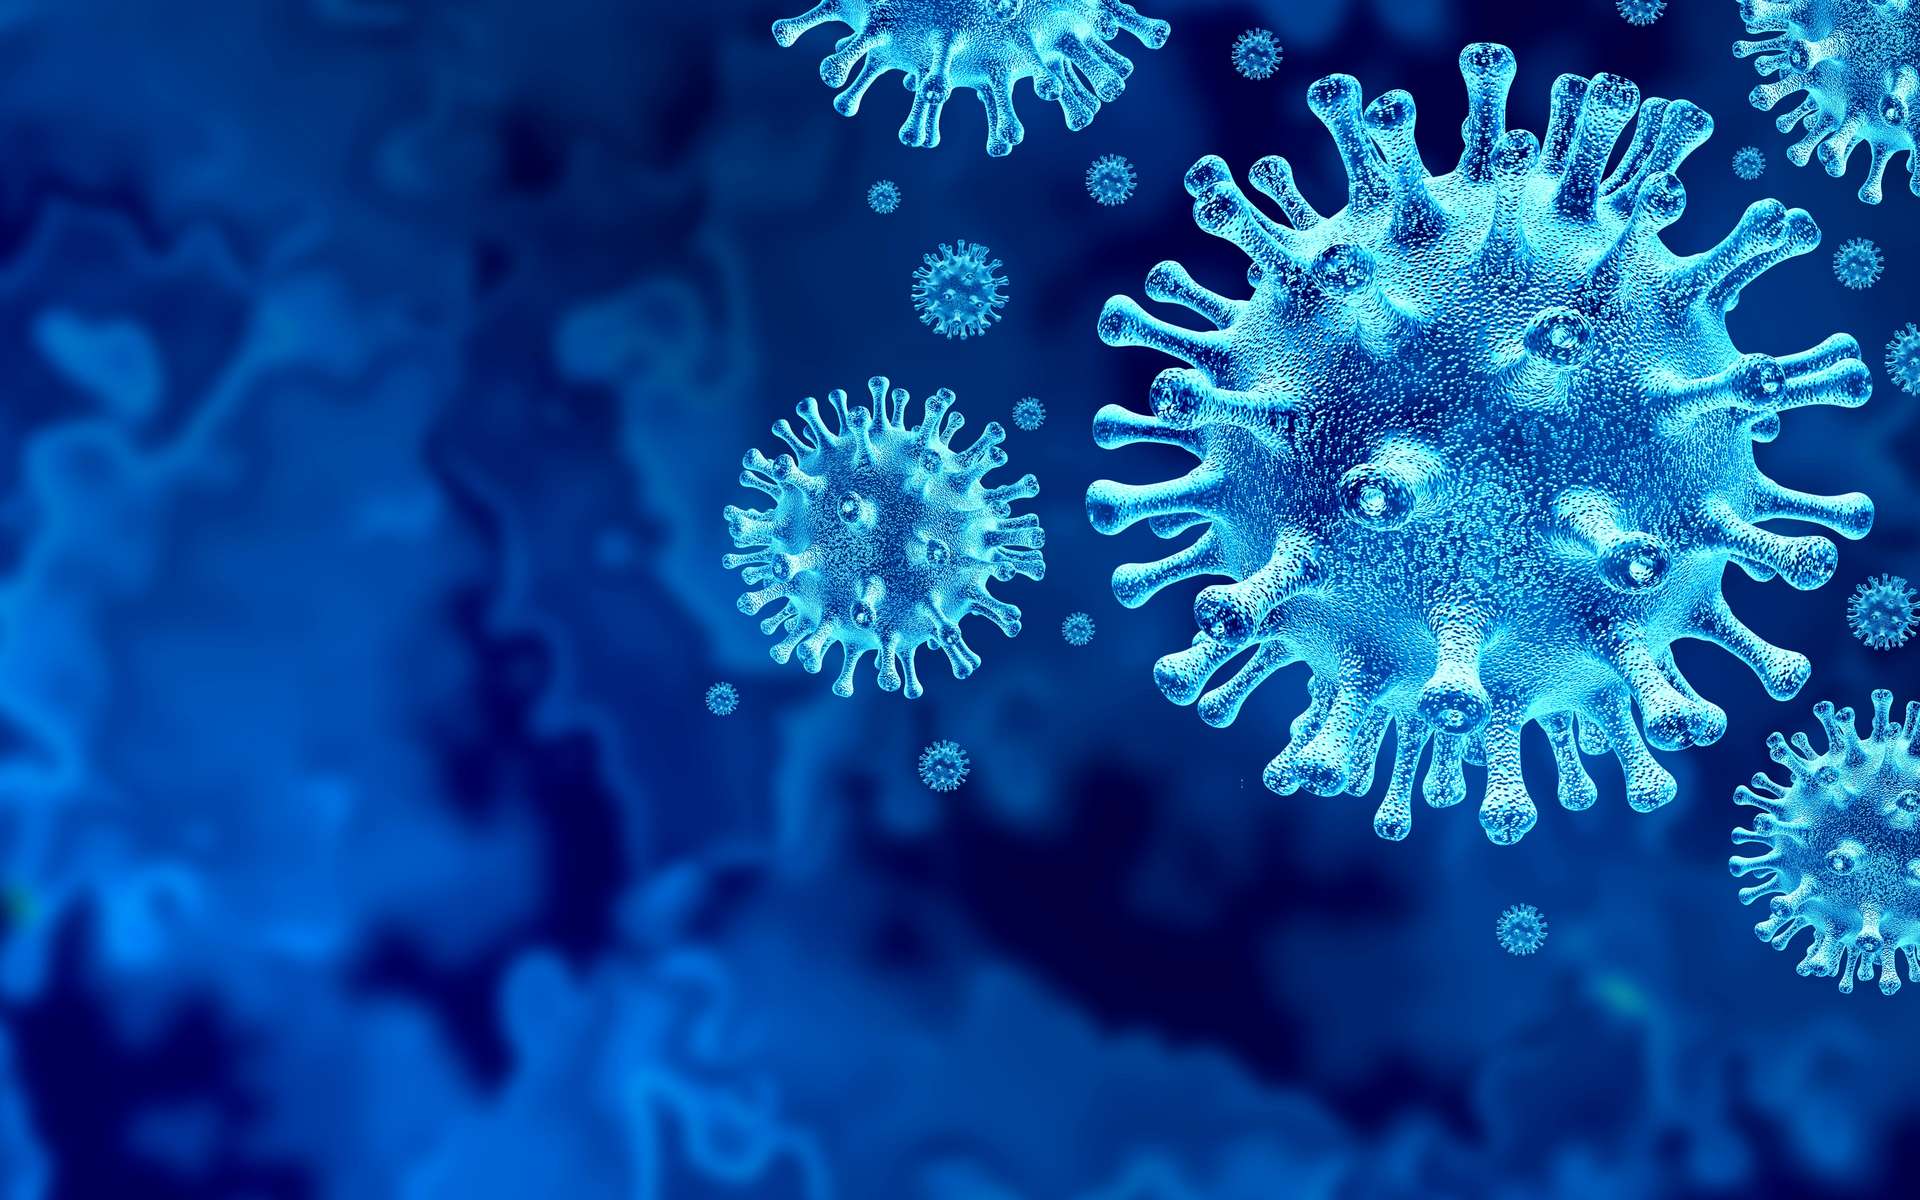 Une protéine leurre pourrait prévenir l'infection à SARS-CoV-2. © Freshidea, Adobe Stock